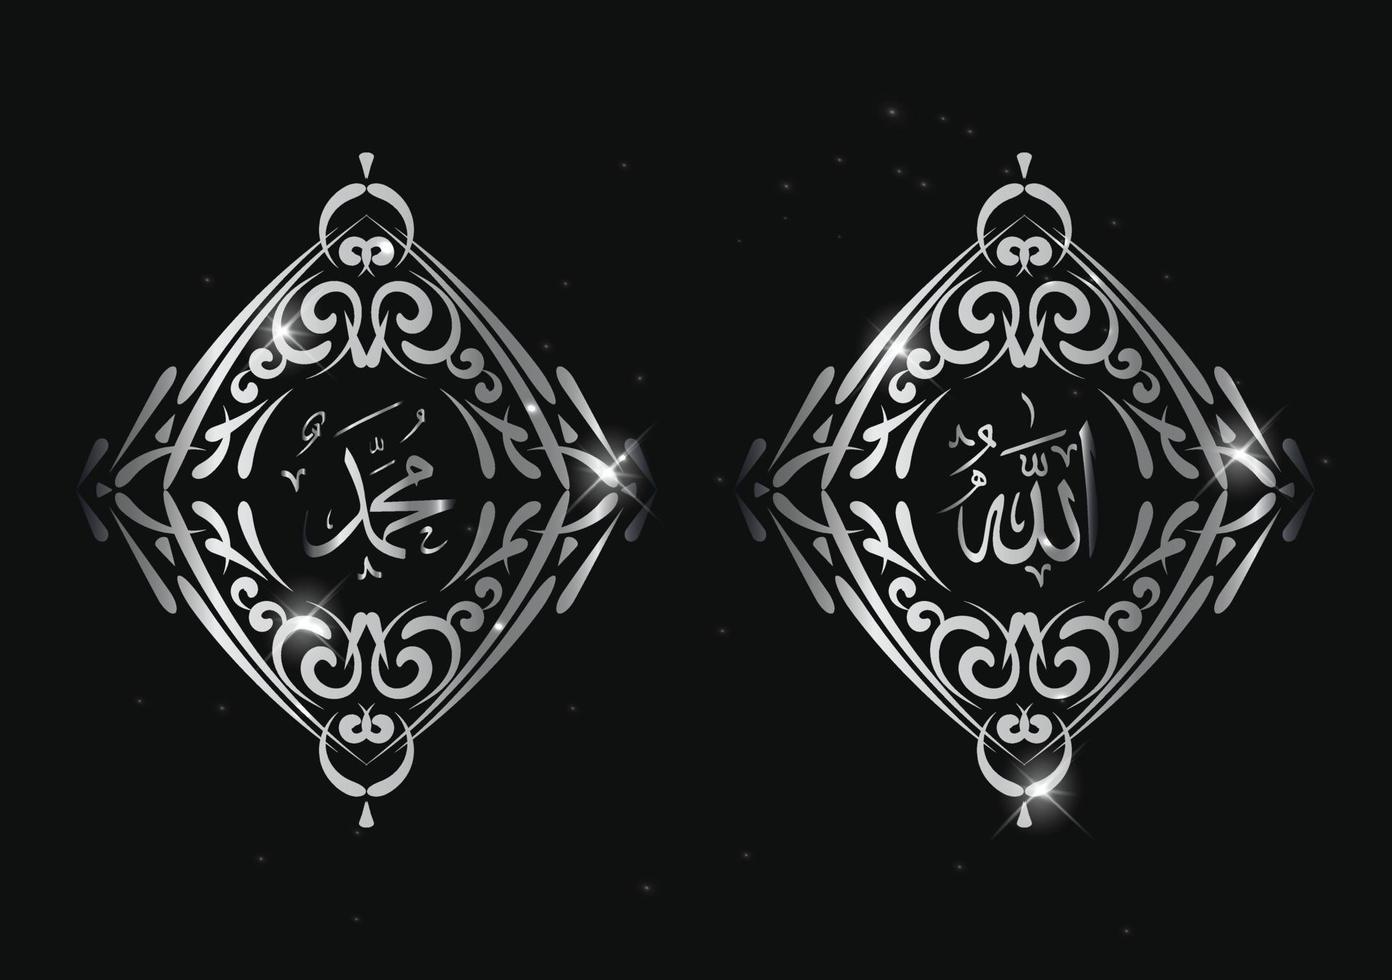 allah muhammad arabische kalligrafie mit vintage-rahmen und metallfarbe vektor